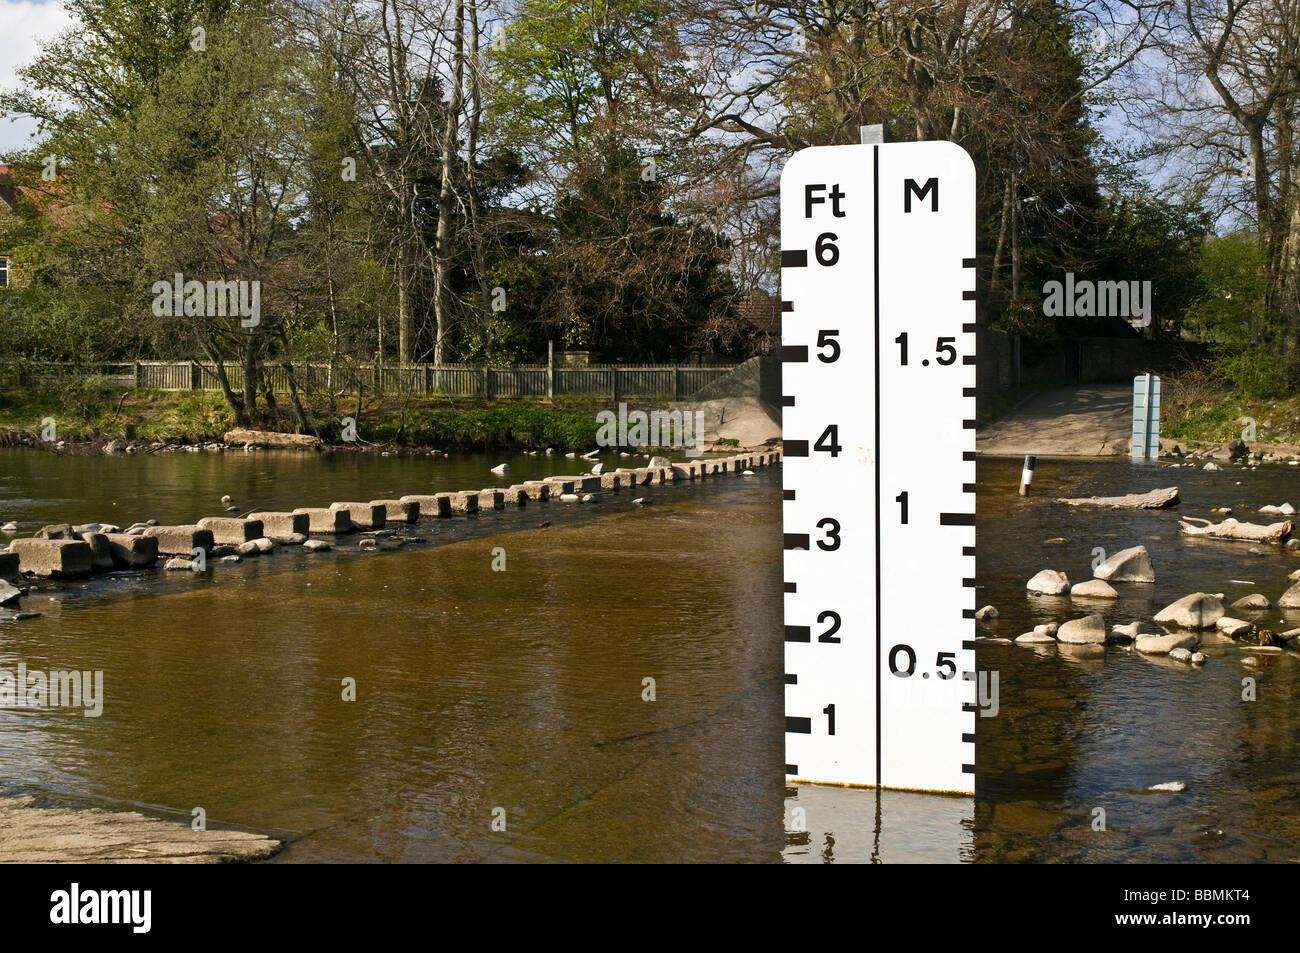 L'usure de la rivière DURHAM DH STANHOPE crossing river ford appareil de mesure de niveau d'eau stepping stones Banque D'Images